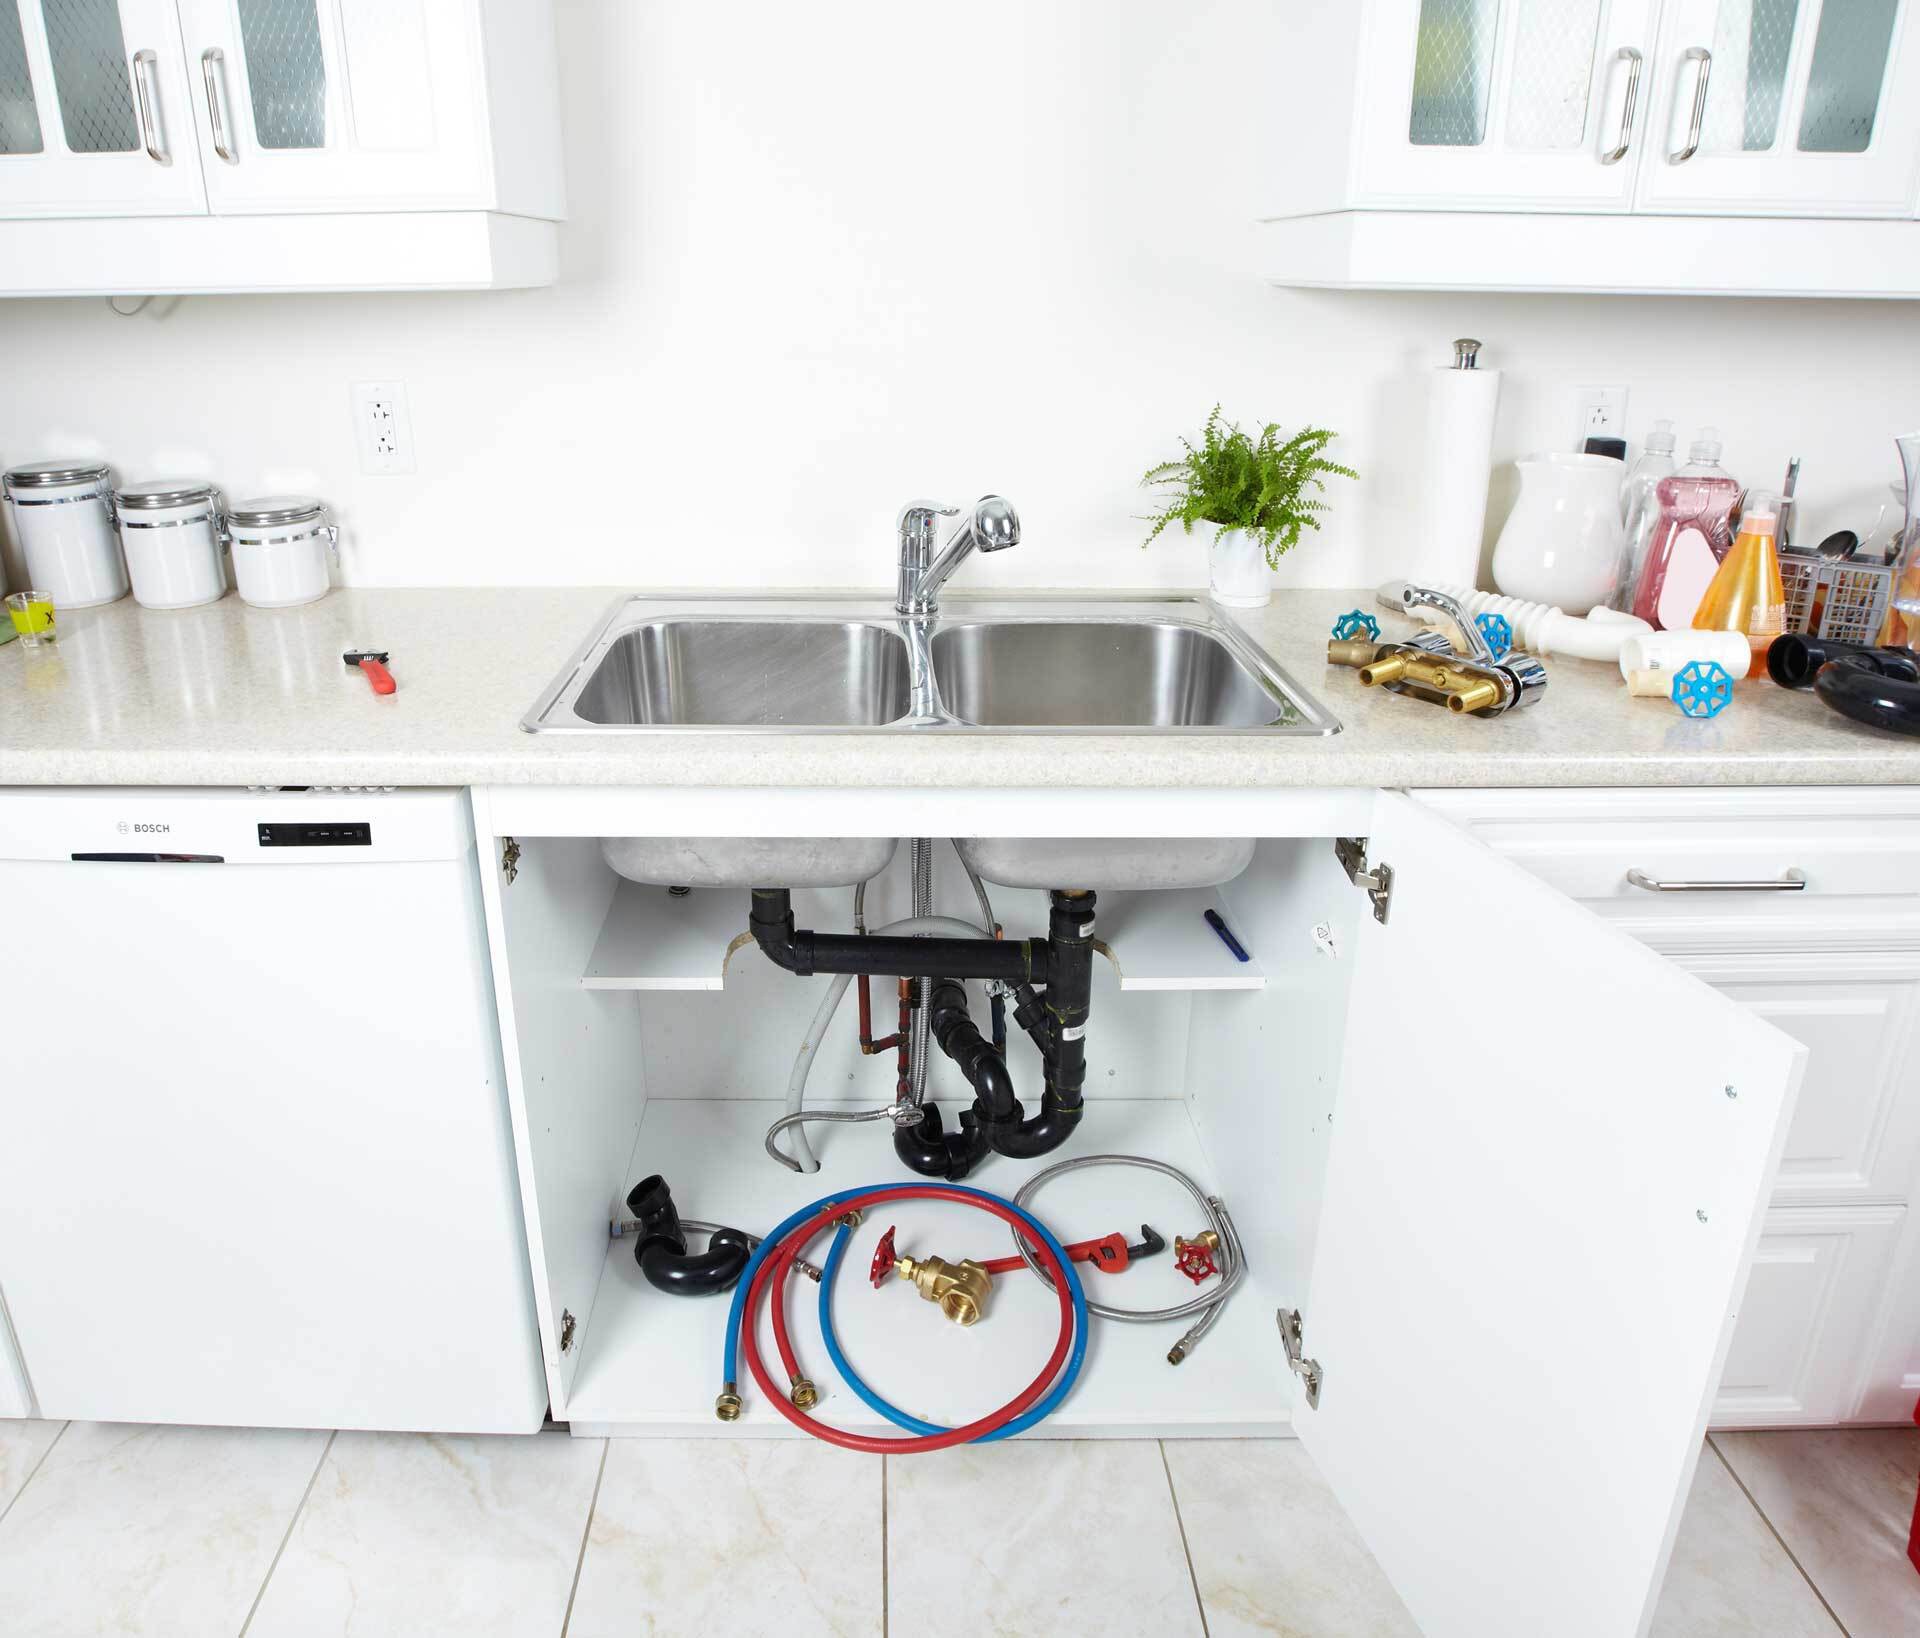 Kitchen & Bathroom Maintenance Checklist